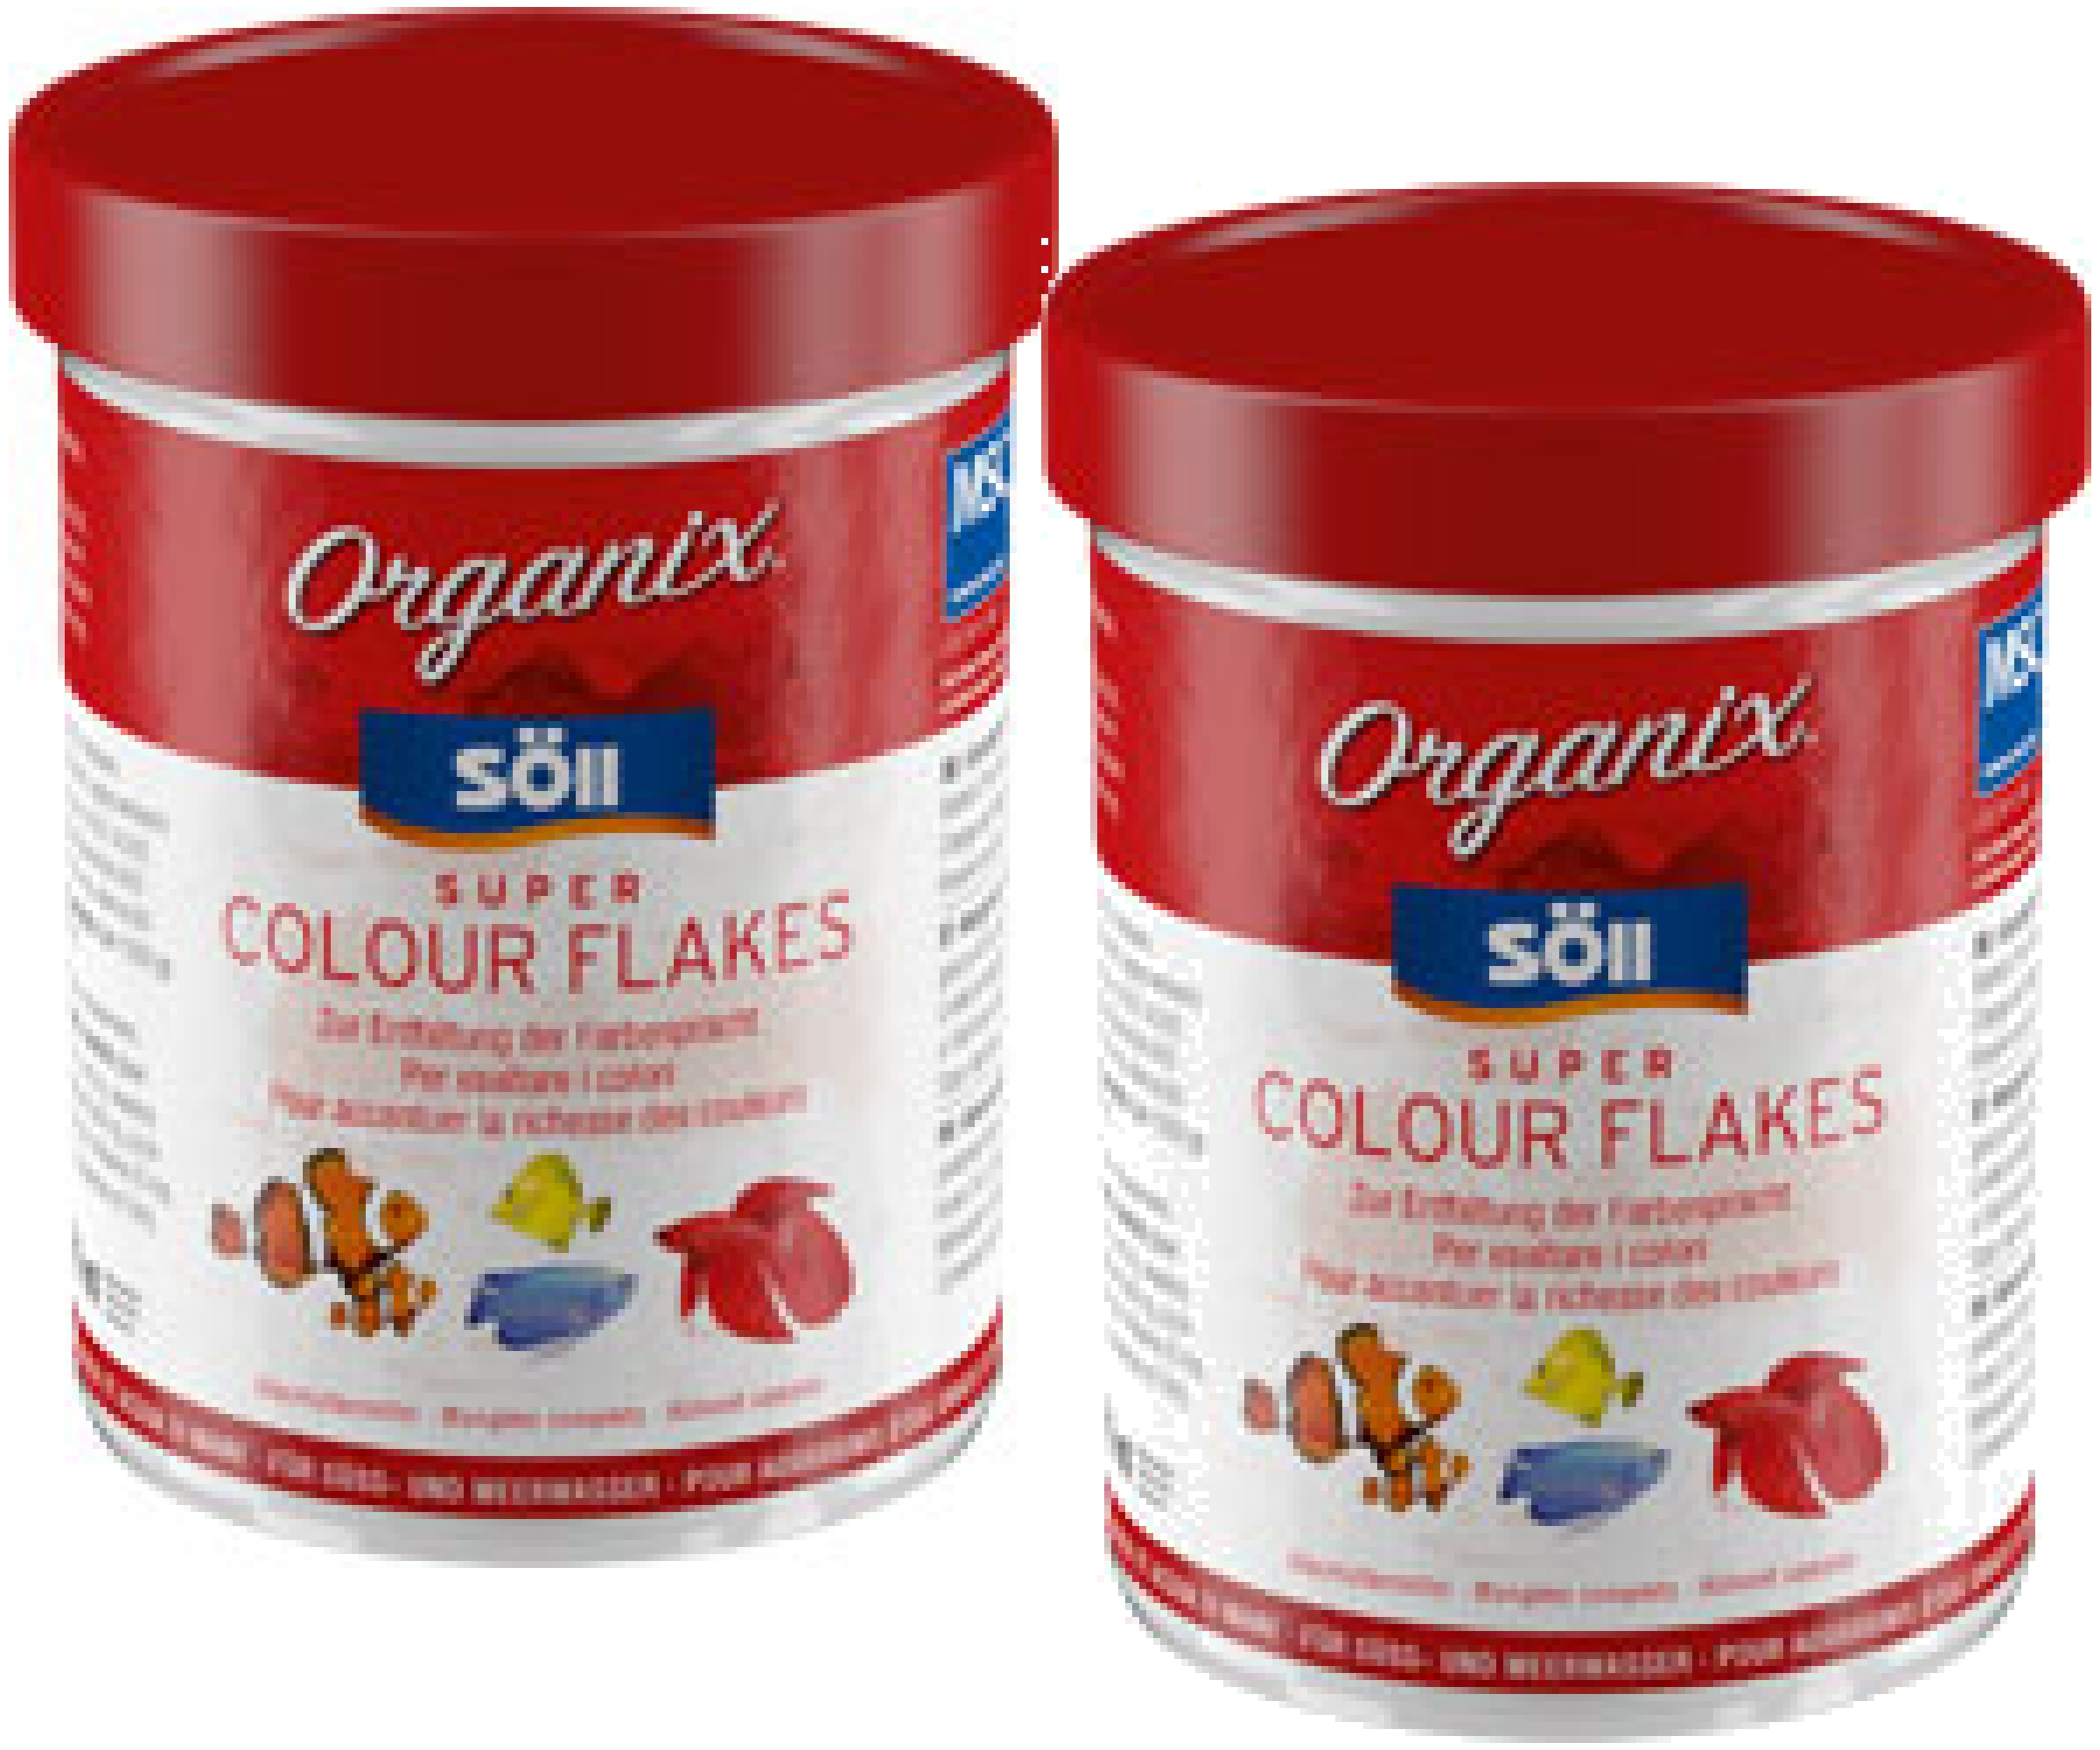 Söll Organix Super Colour Flakes